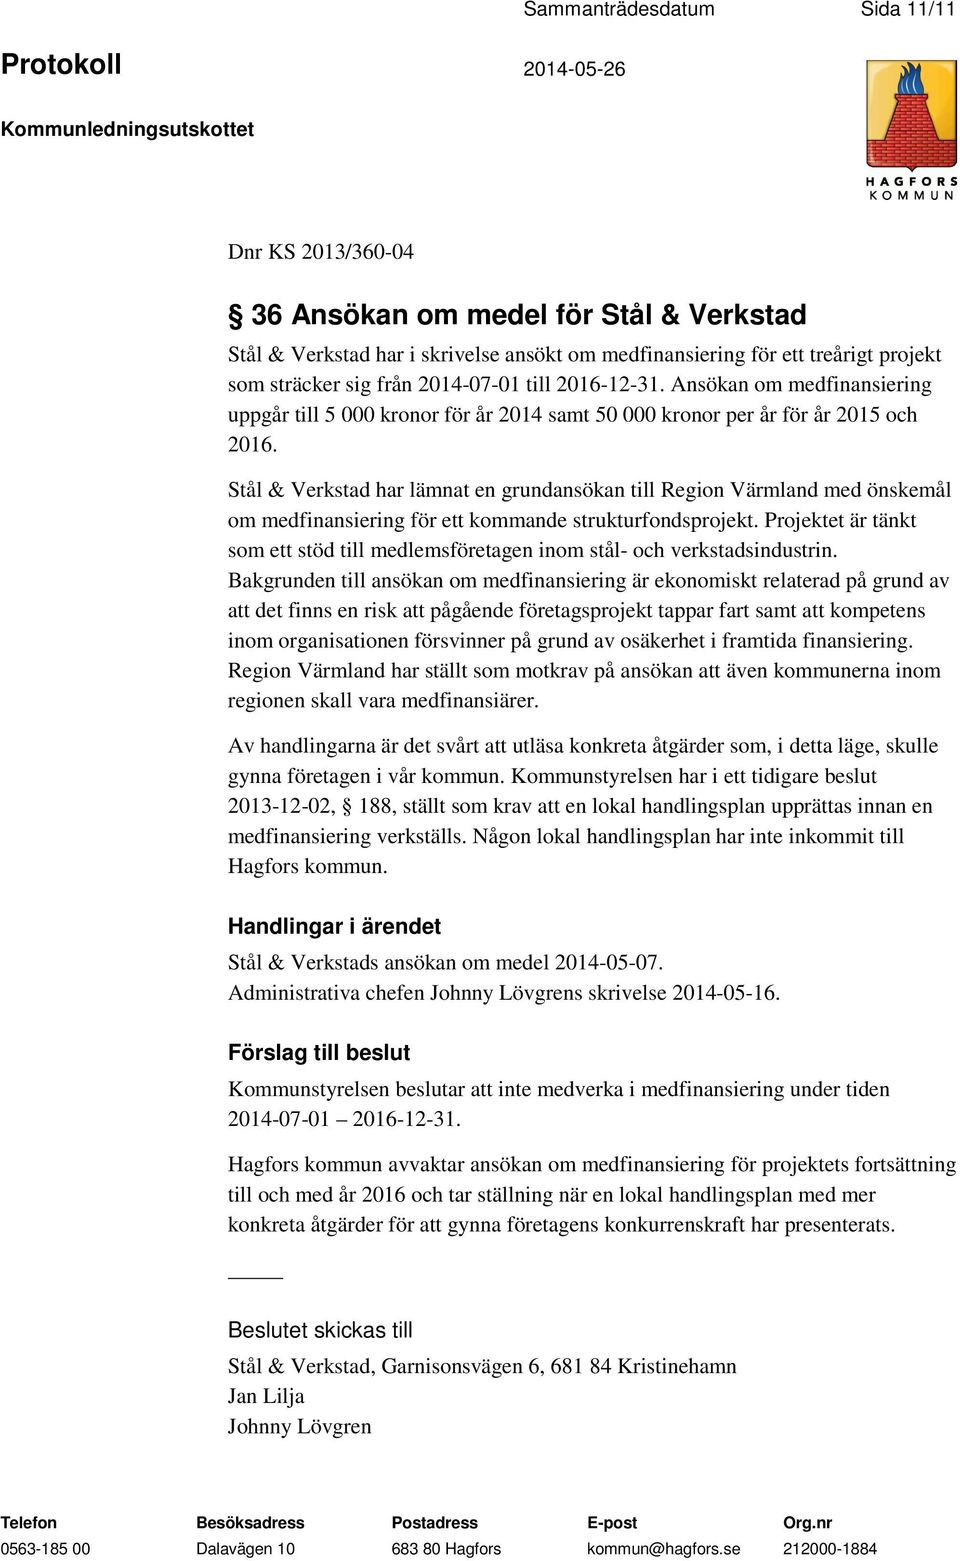 Stål & Verkstad har lämnat en grundansökan till Region Värmland med önskemål om medfinansiering för ett kommande strukturfondsprojekt.